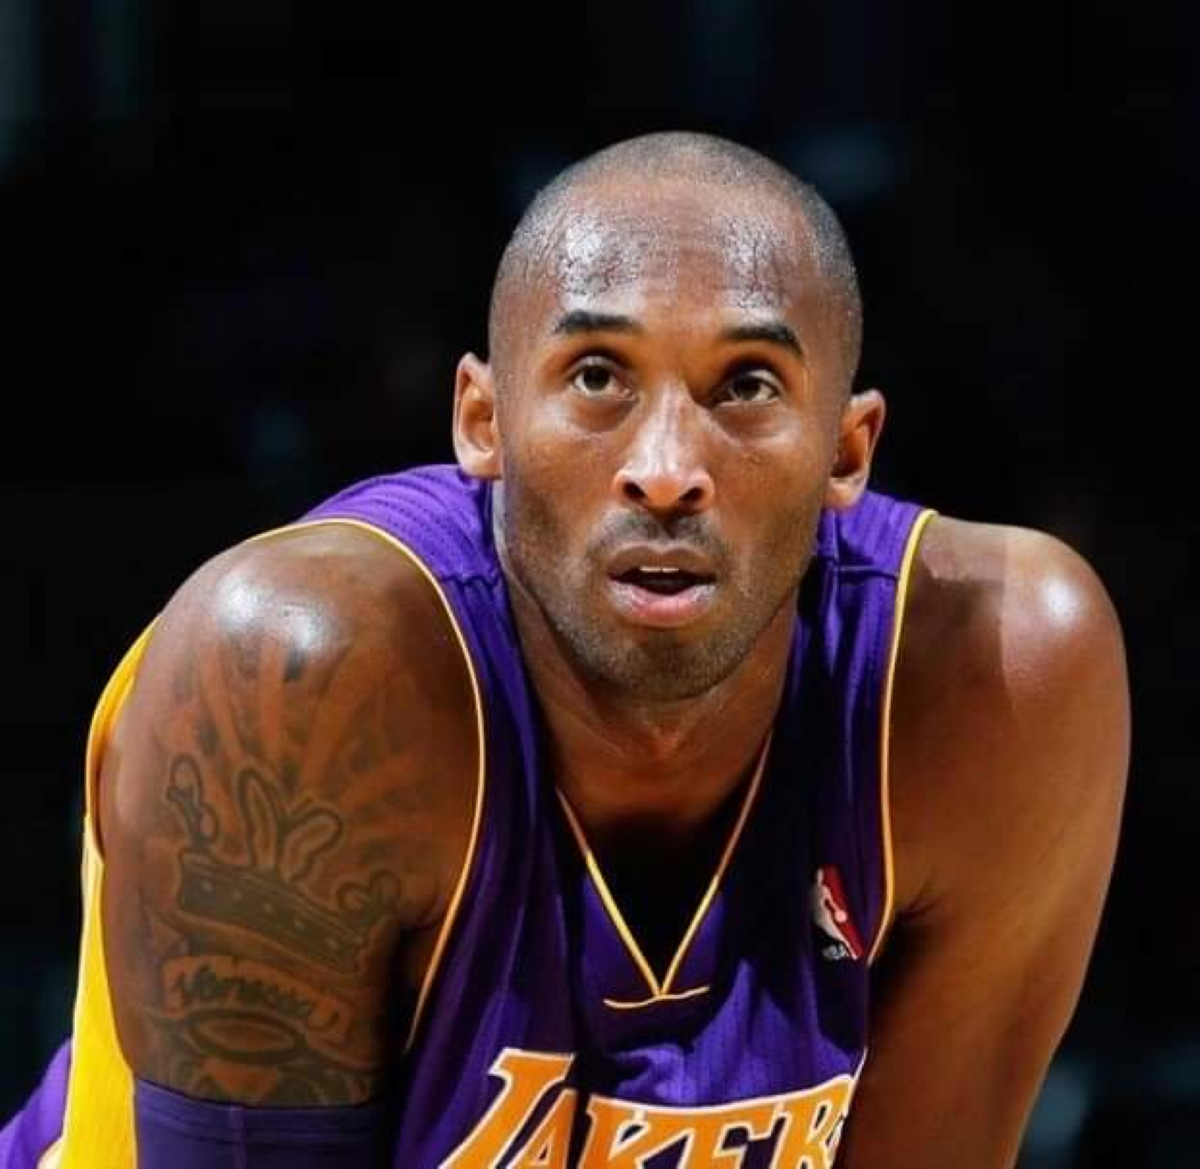 NBA : Kobe Bryant est décédé dans un tragique accident d'hélicoptère à l'âge de 41 ans